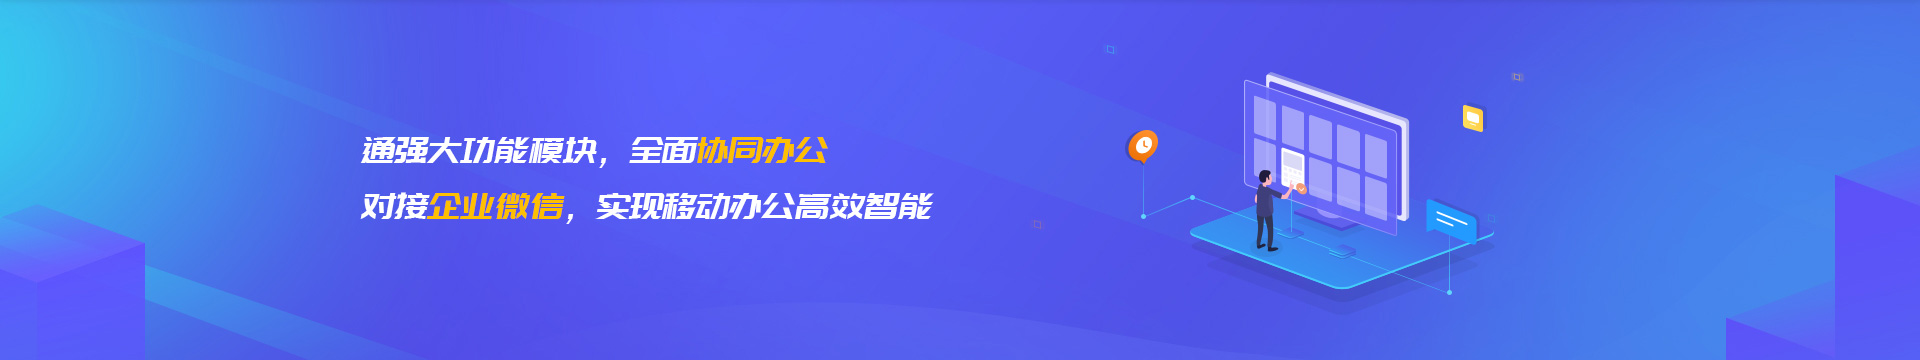 桂林企业微信开发